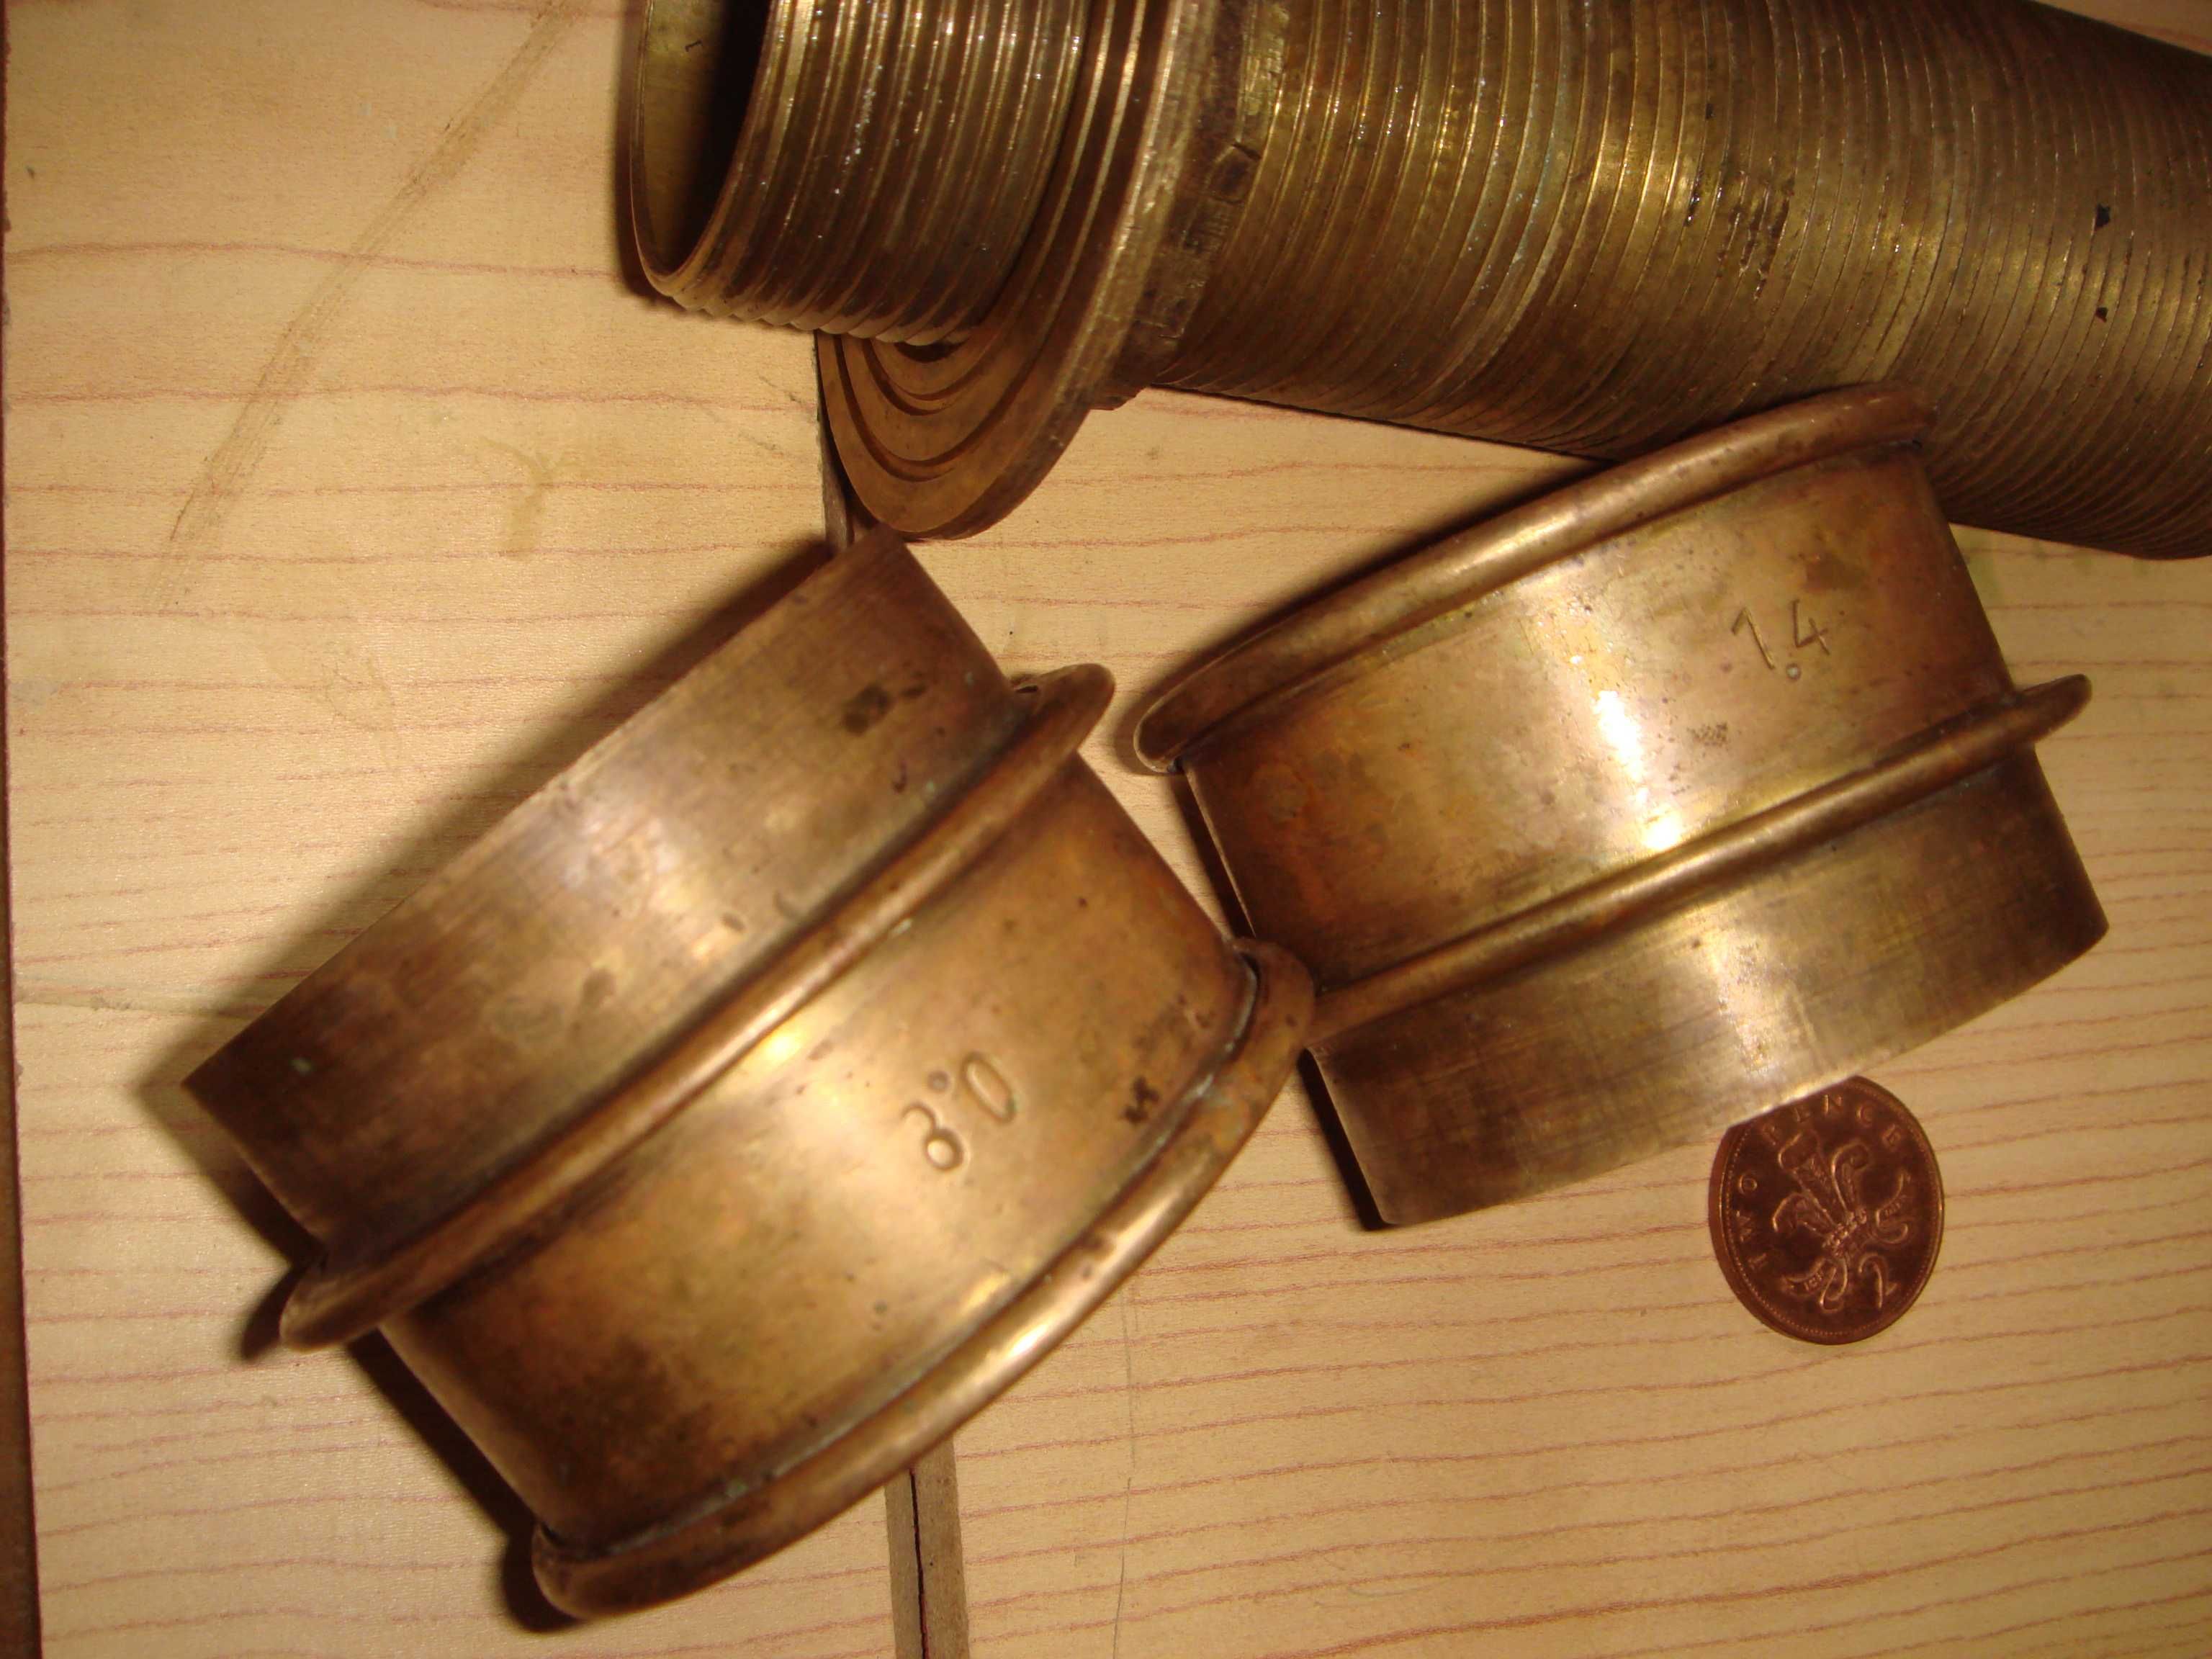 Труба с резьбой  Латунь и два фильтра - сита Латунь по 5 см Старинные